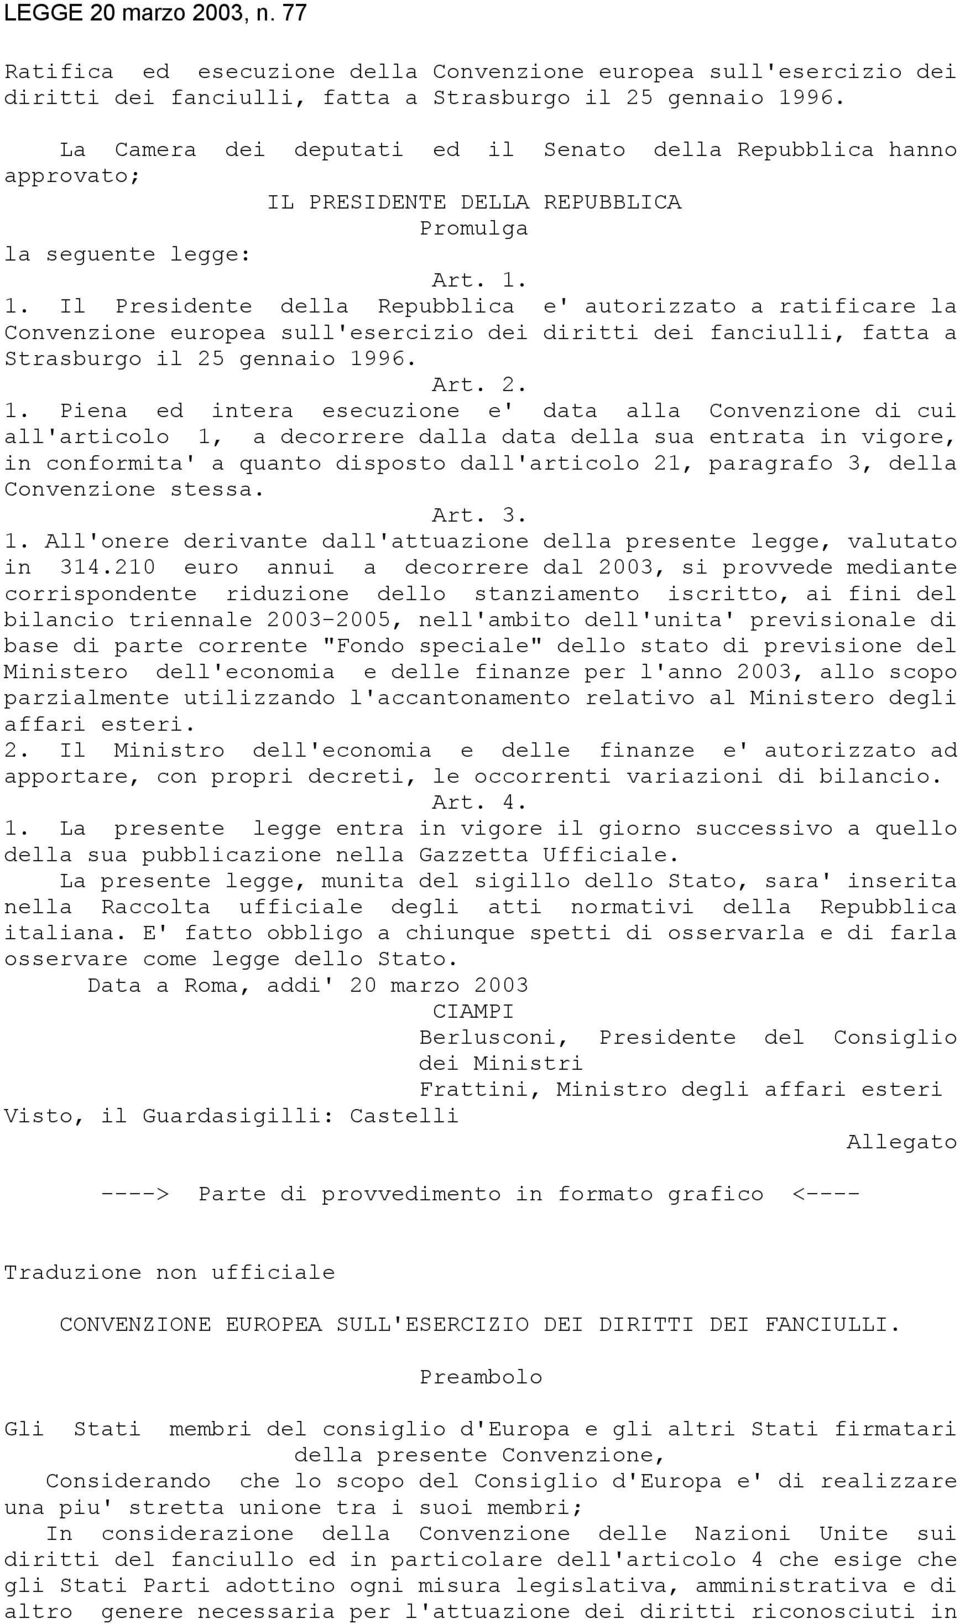 1. Il Presidente della Repubblica e' autorizzato a ratificare la Convenzione europea sull'esercizio dei diritti dei fanciulli, fatta a Strasburgo il 25 gennaio 19